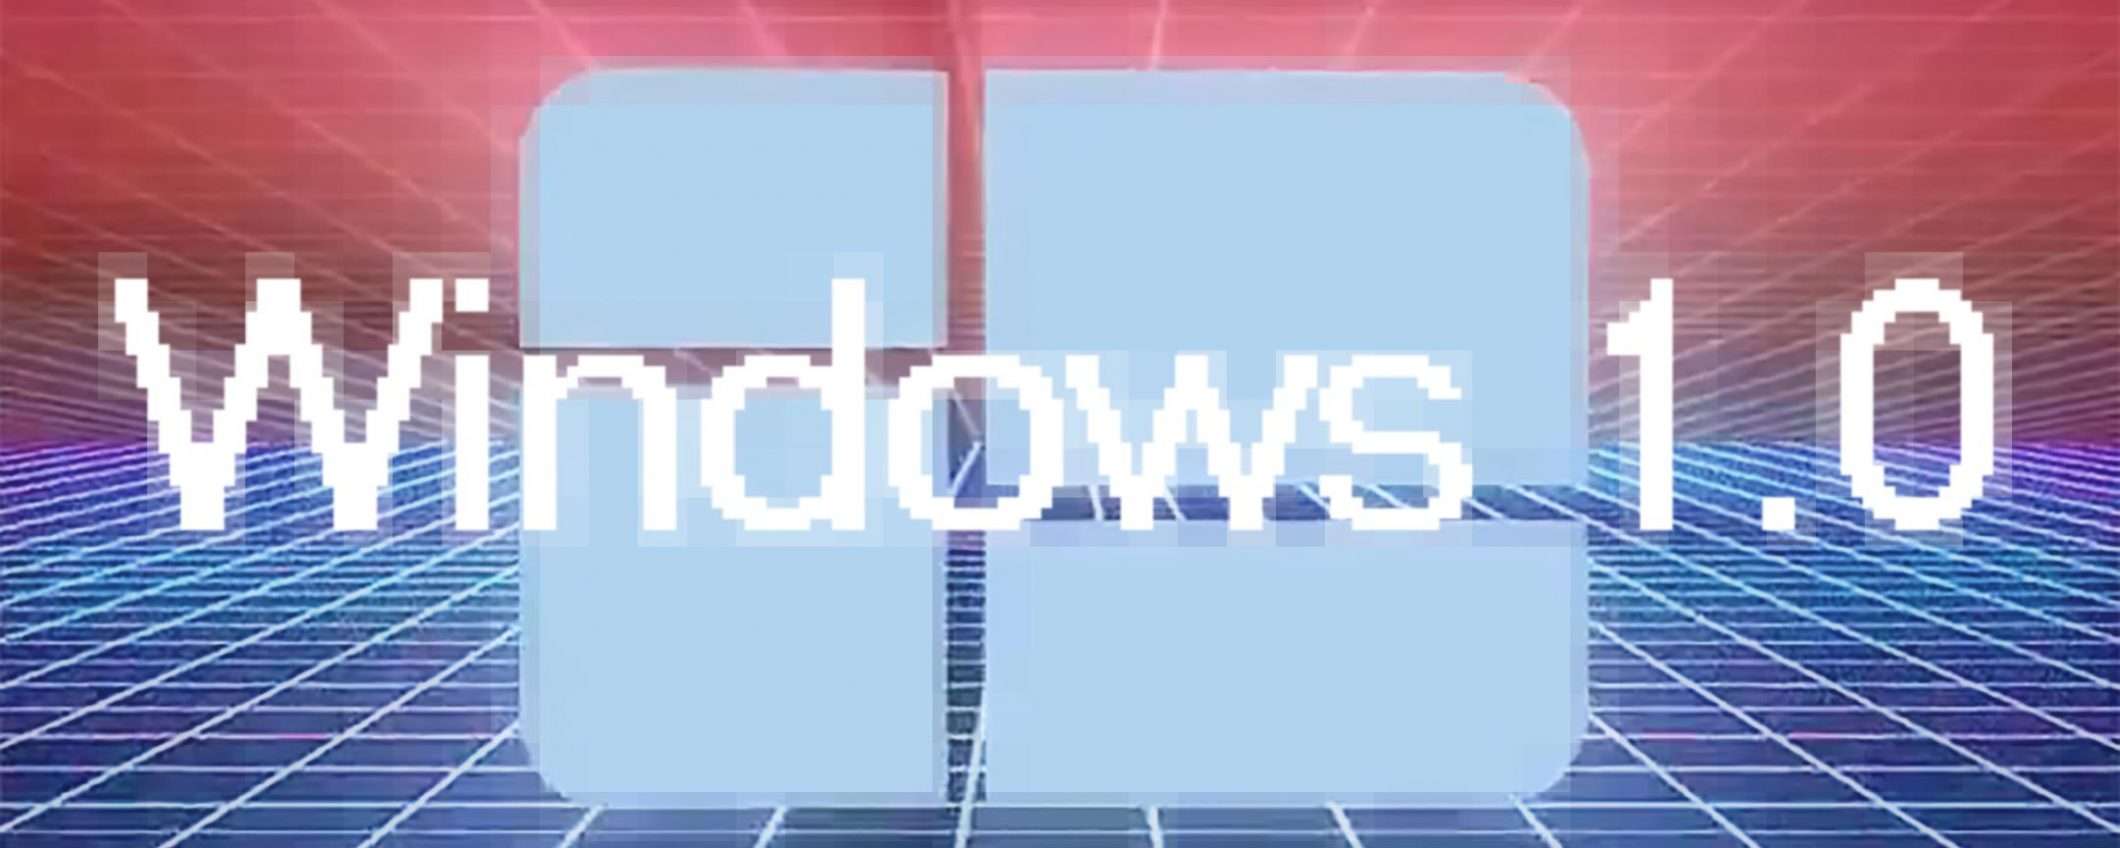 Microsoft annuncia Windows 1.0: si torna nel 1985